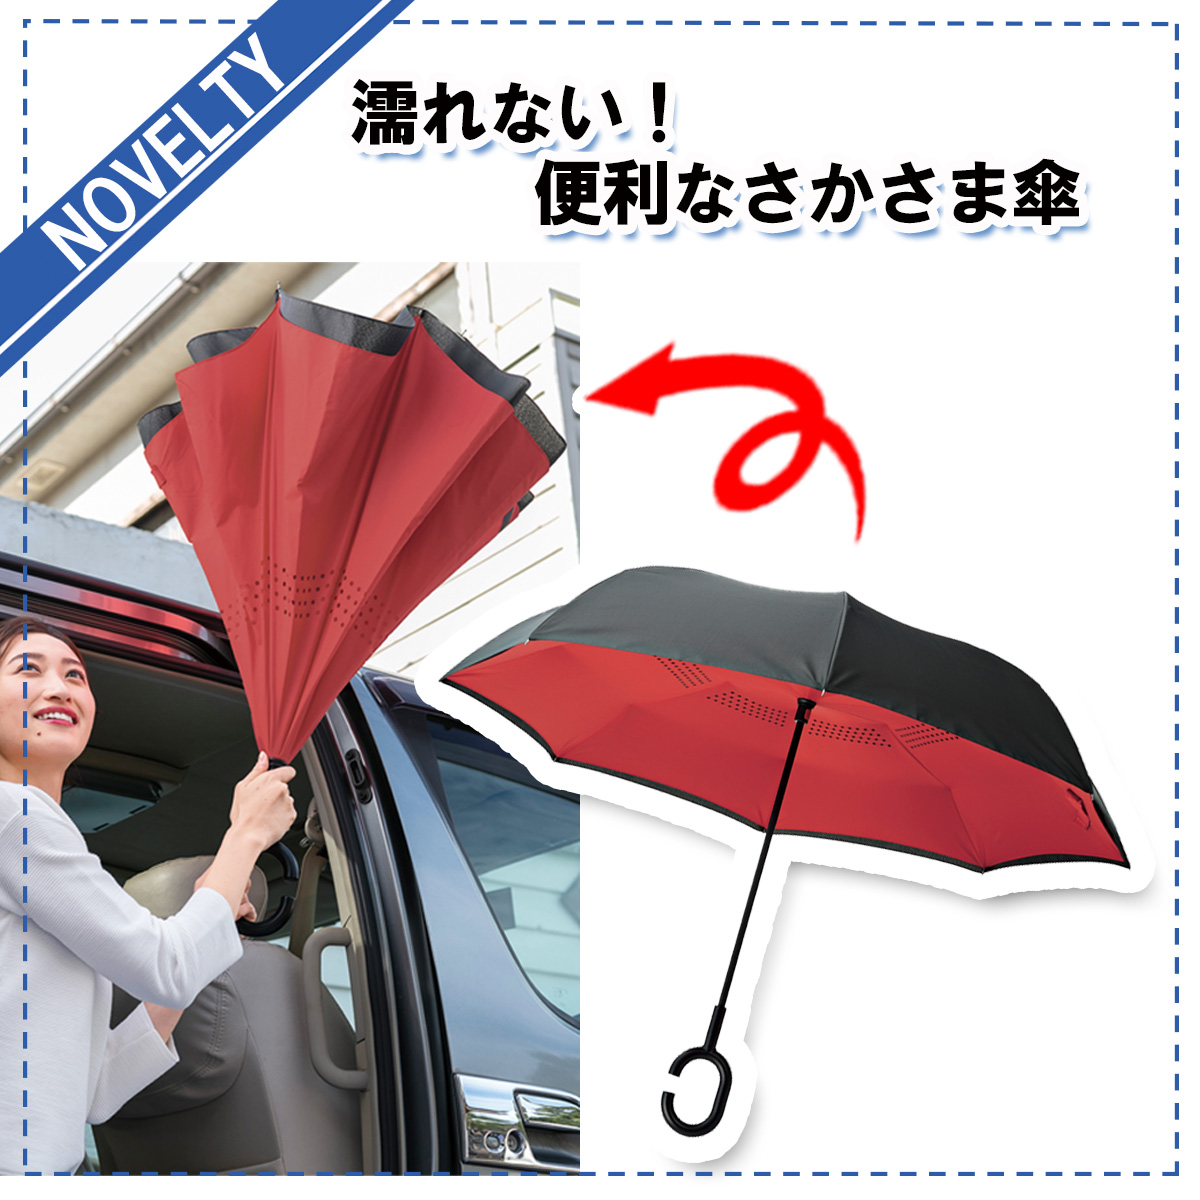 【ノベルティグッズ】 濡れない! 便利なさかさま傘